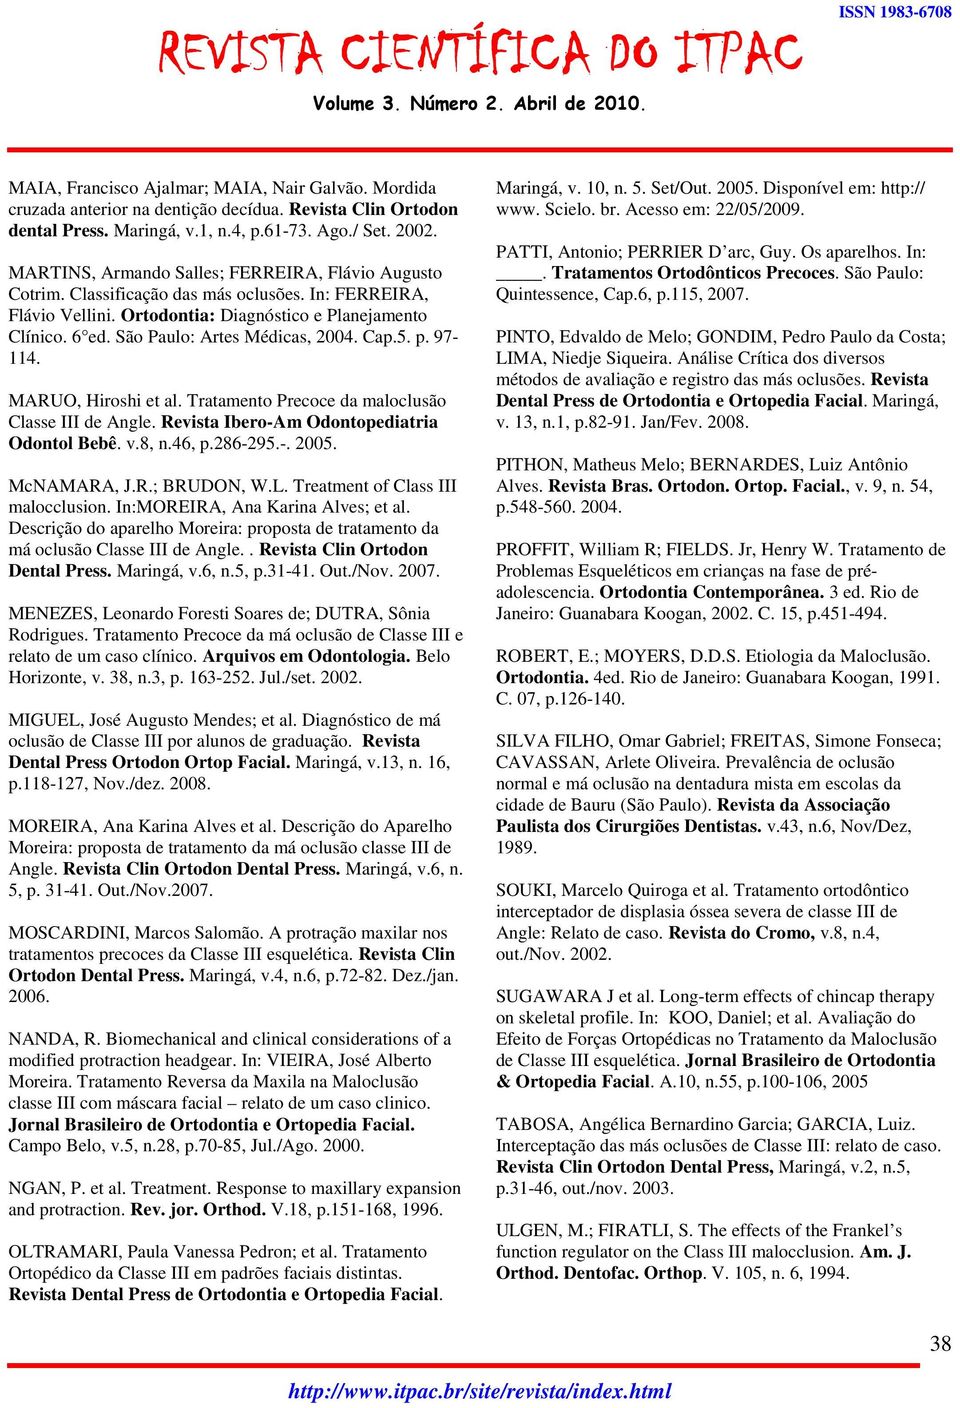 São Paulo: Artes Médicas, 2004. Cap.5. p. 97-114. MARUO, Hiroshi et al. Tratamento Precoce da maloclusão Classe III de Angle. Revista Ibero-Am Odontopediatria Odontol Bebê. v.8, n.46, p.286-295.-. 2005.